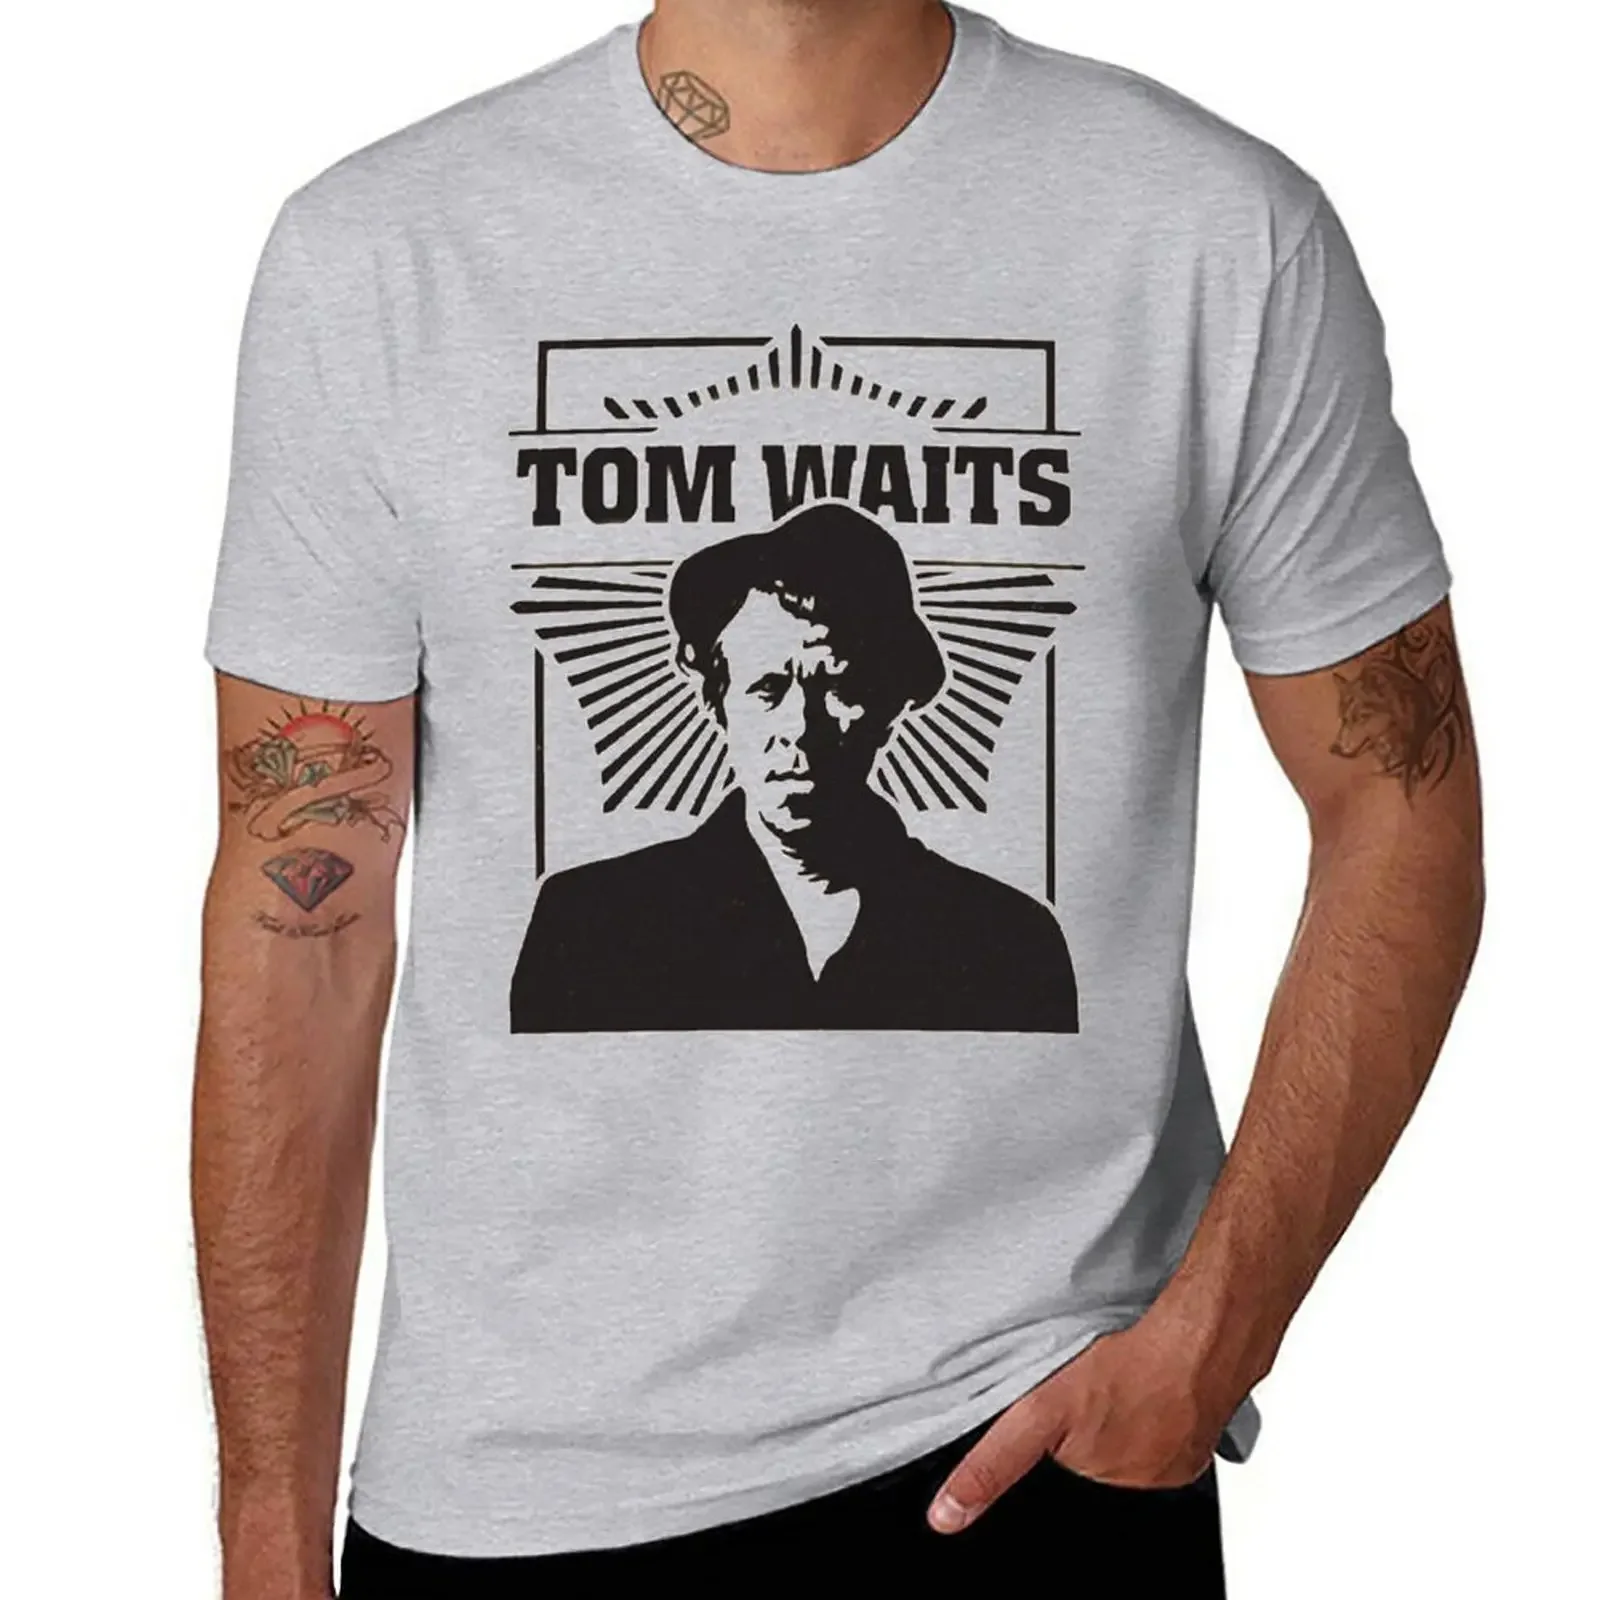 

Tom Waits T-Shirt shirts graphic tees tops summer tops men clothings